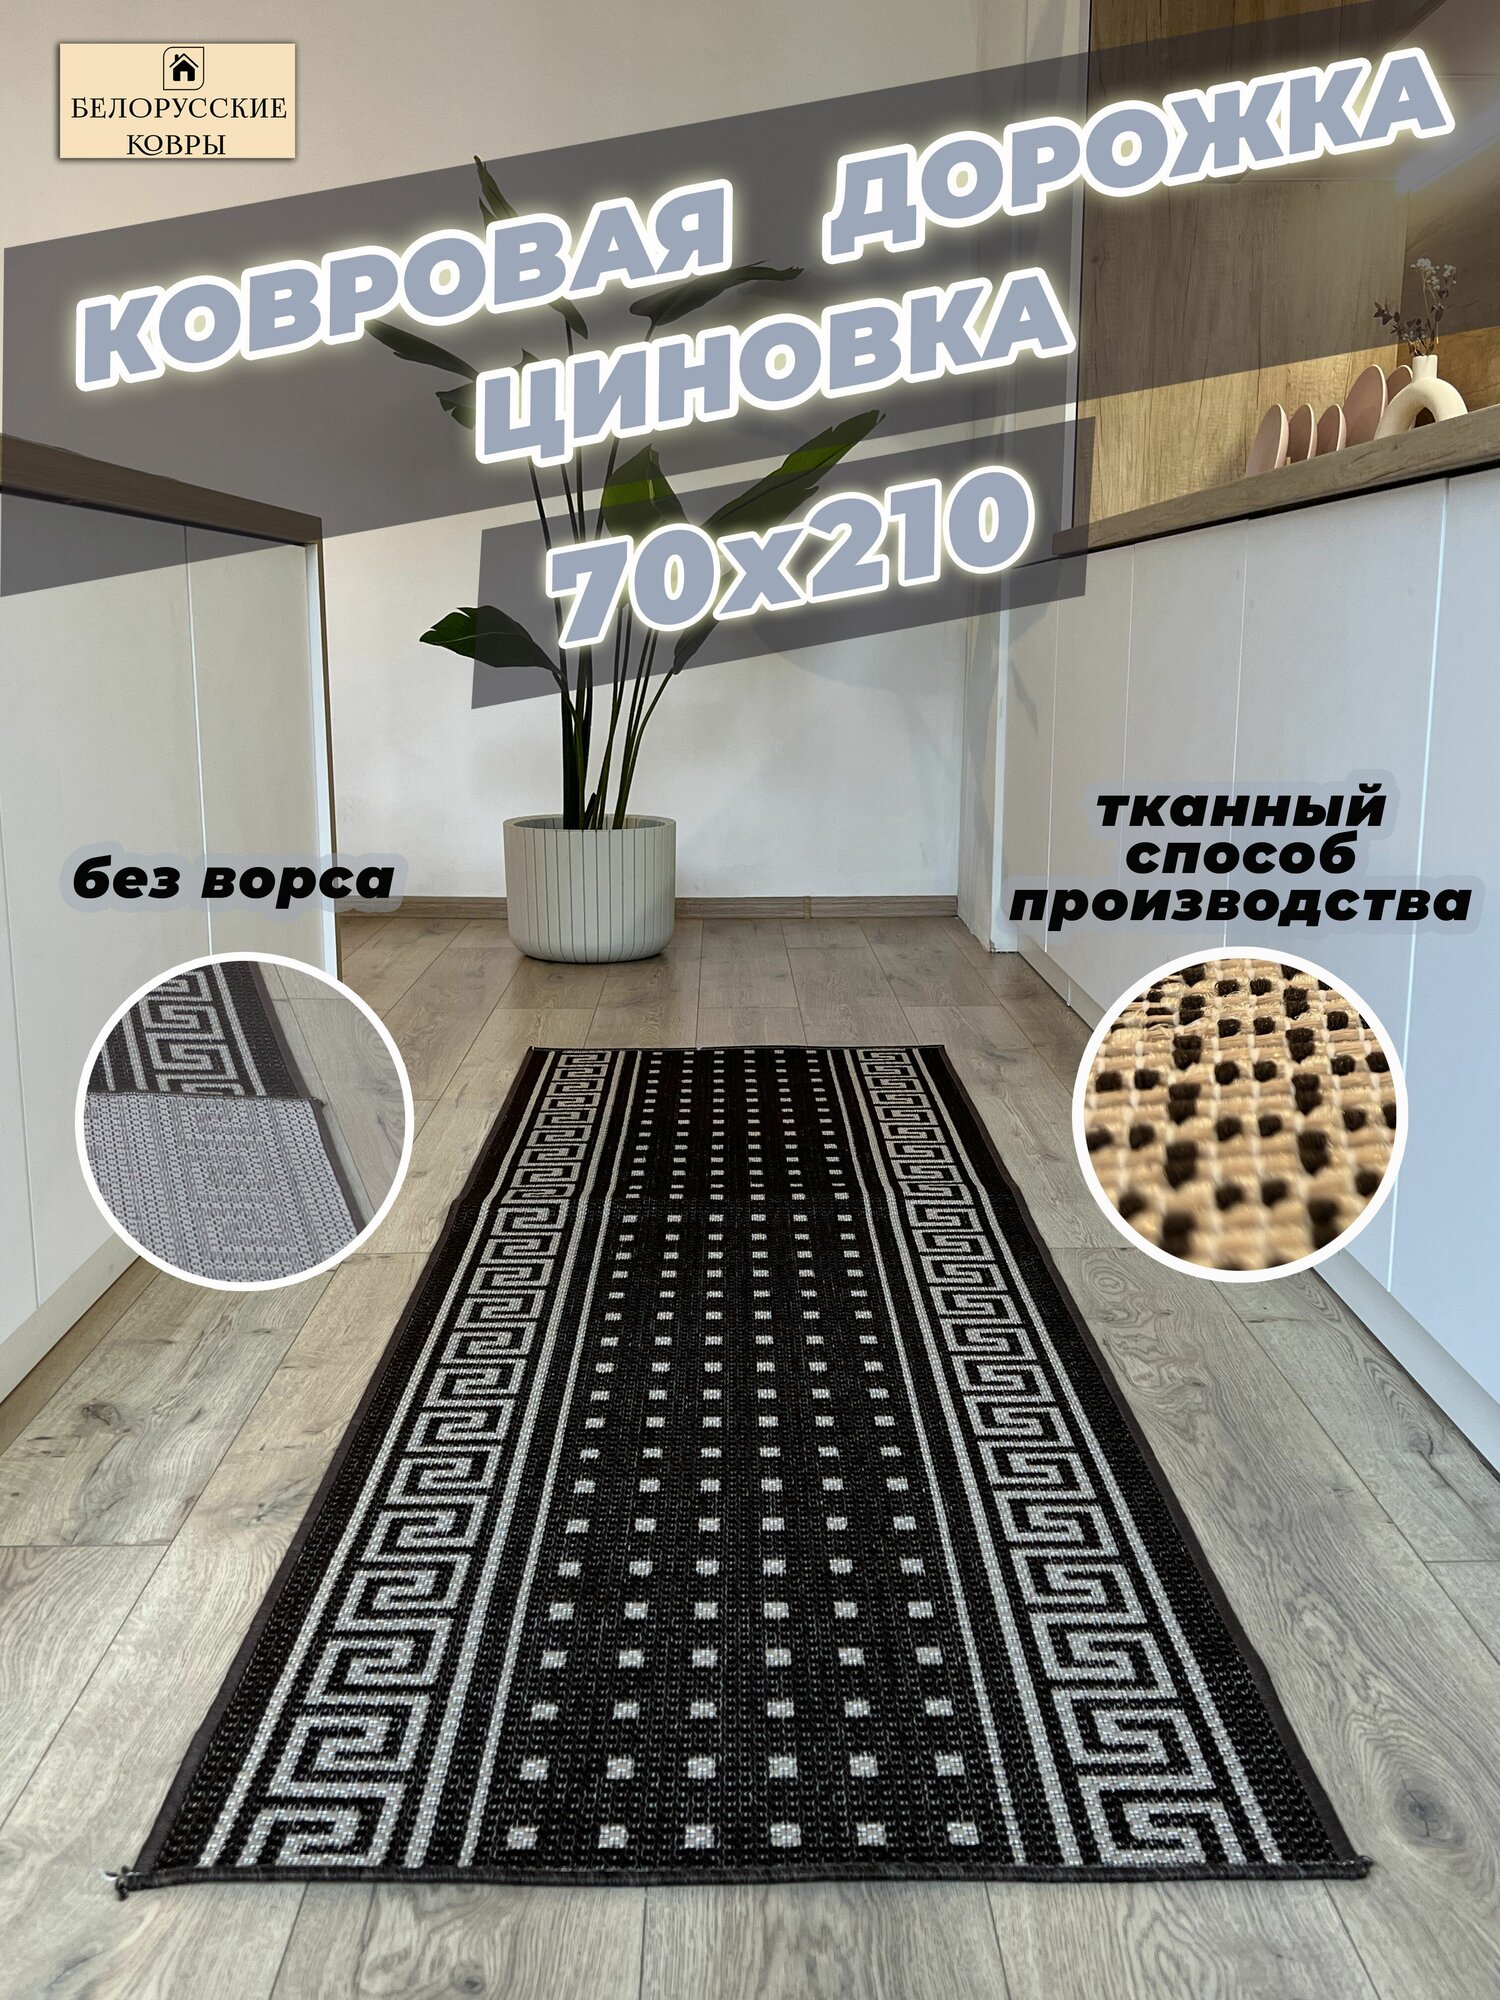 Белорусские ковры, ковровая дорожка циновка 70х210см./0,7х2,1м.